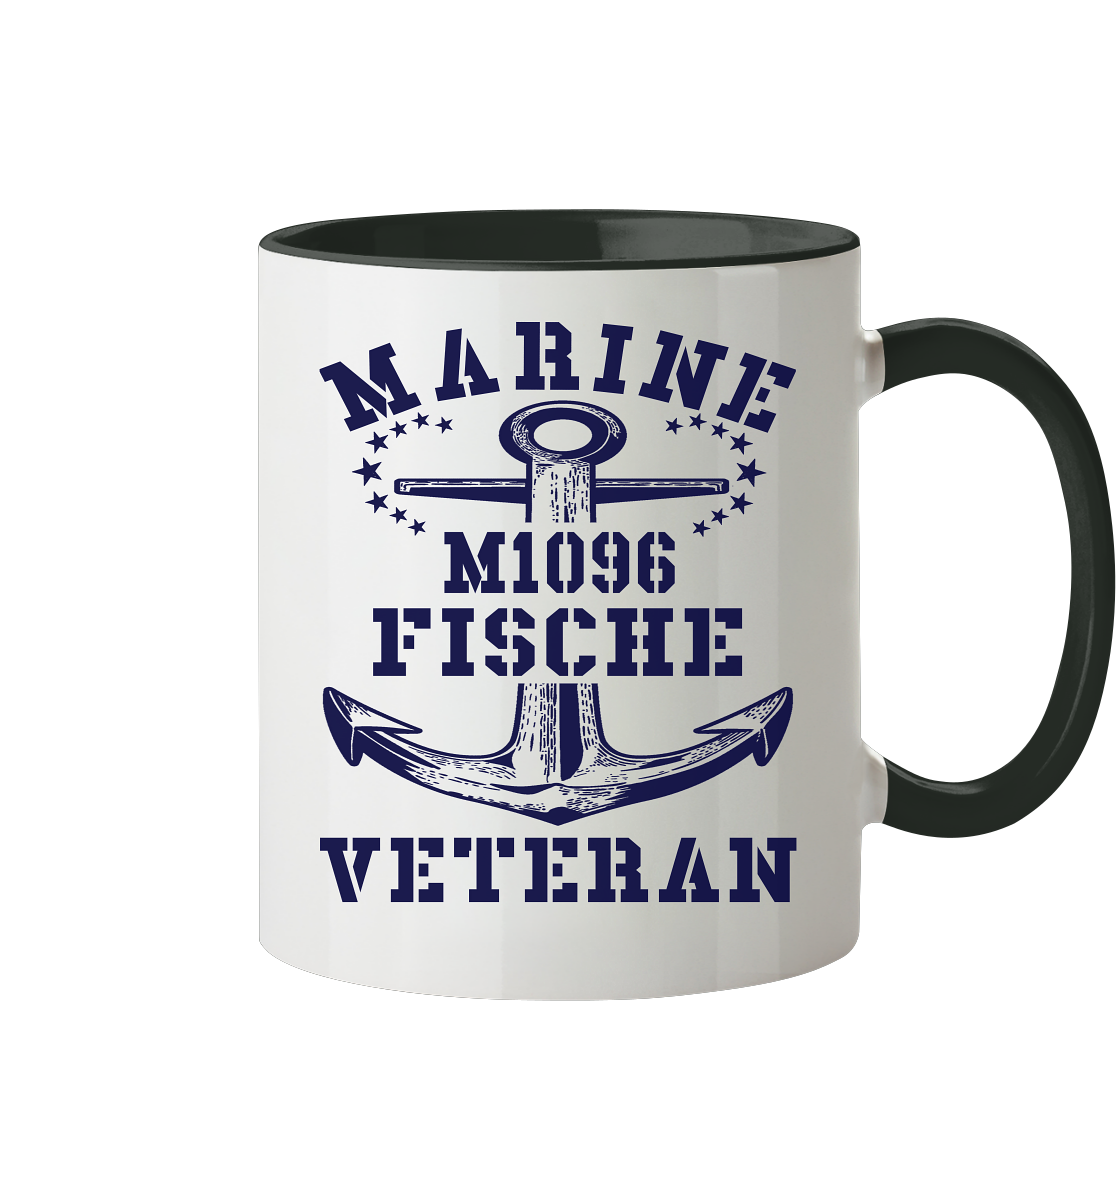 SM-Boot M1096 FISCHE Marine Veteran - Tasse zweifarbig